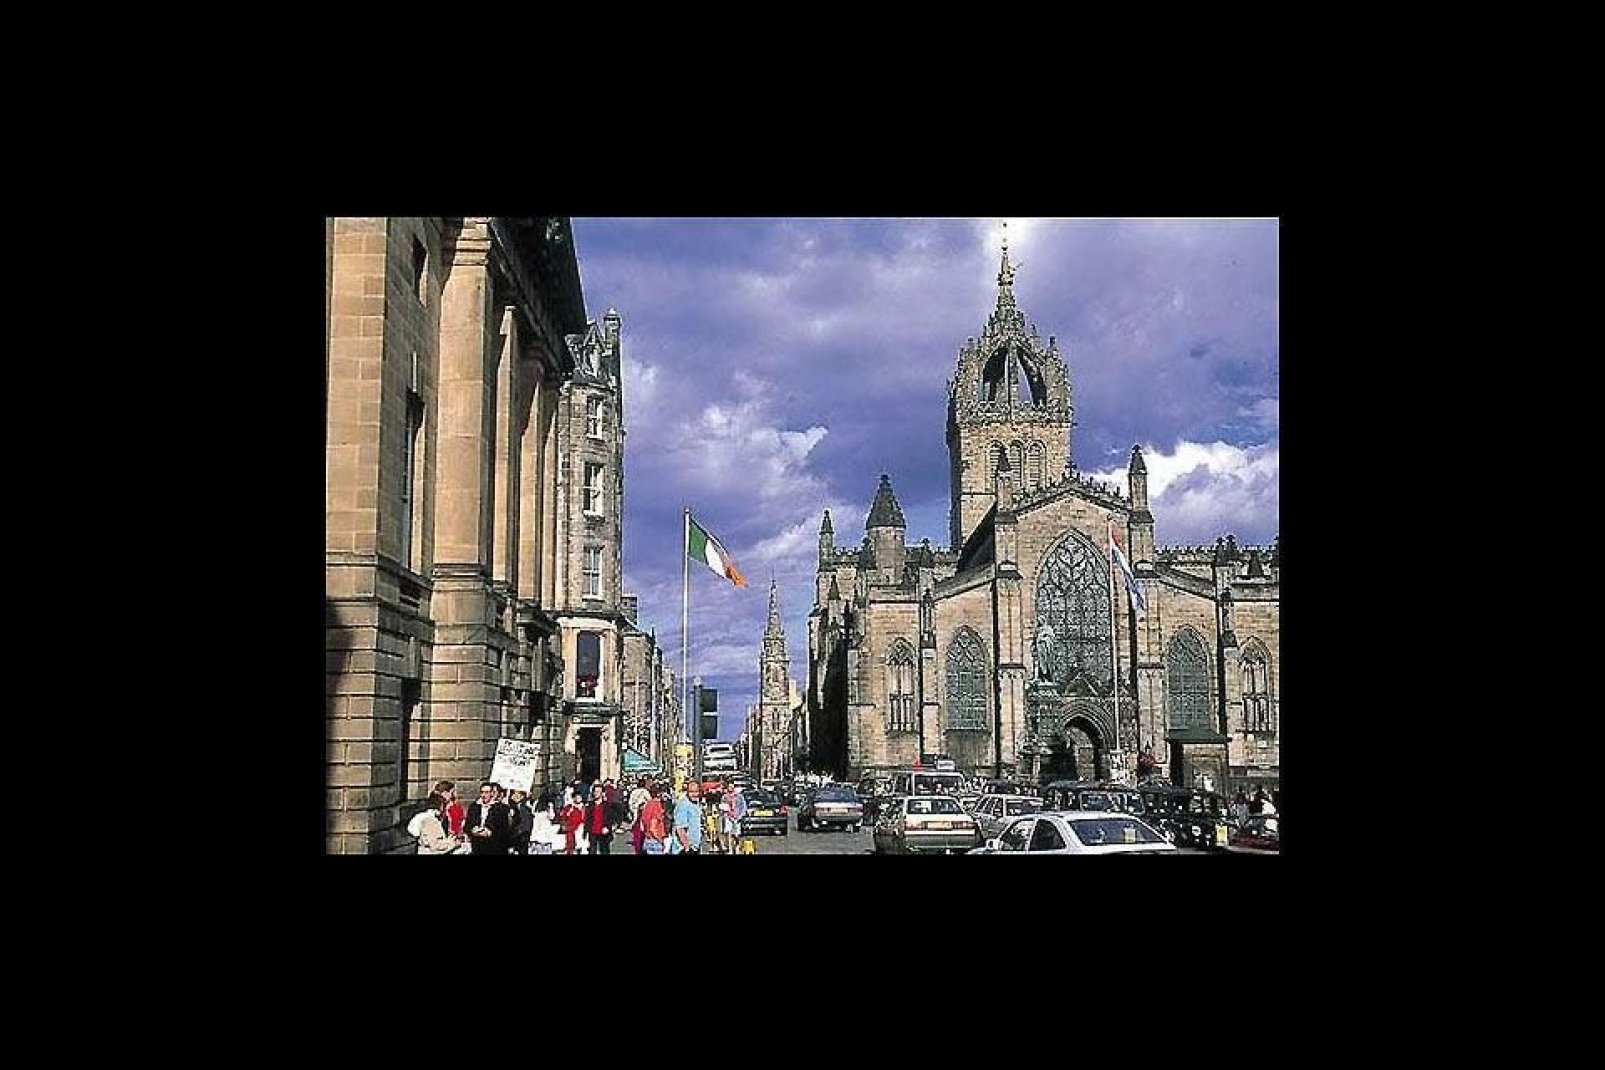 Edinburgh zieht pro Jahr etwa 1 Million Besucher aus Übersee an, wodurch die Stadt nach London der zweitbeliebteste touristische Zielort des Vereinigten Königreichs ist. 